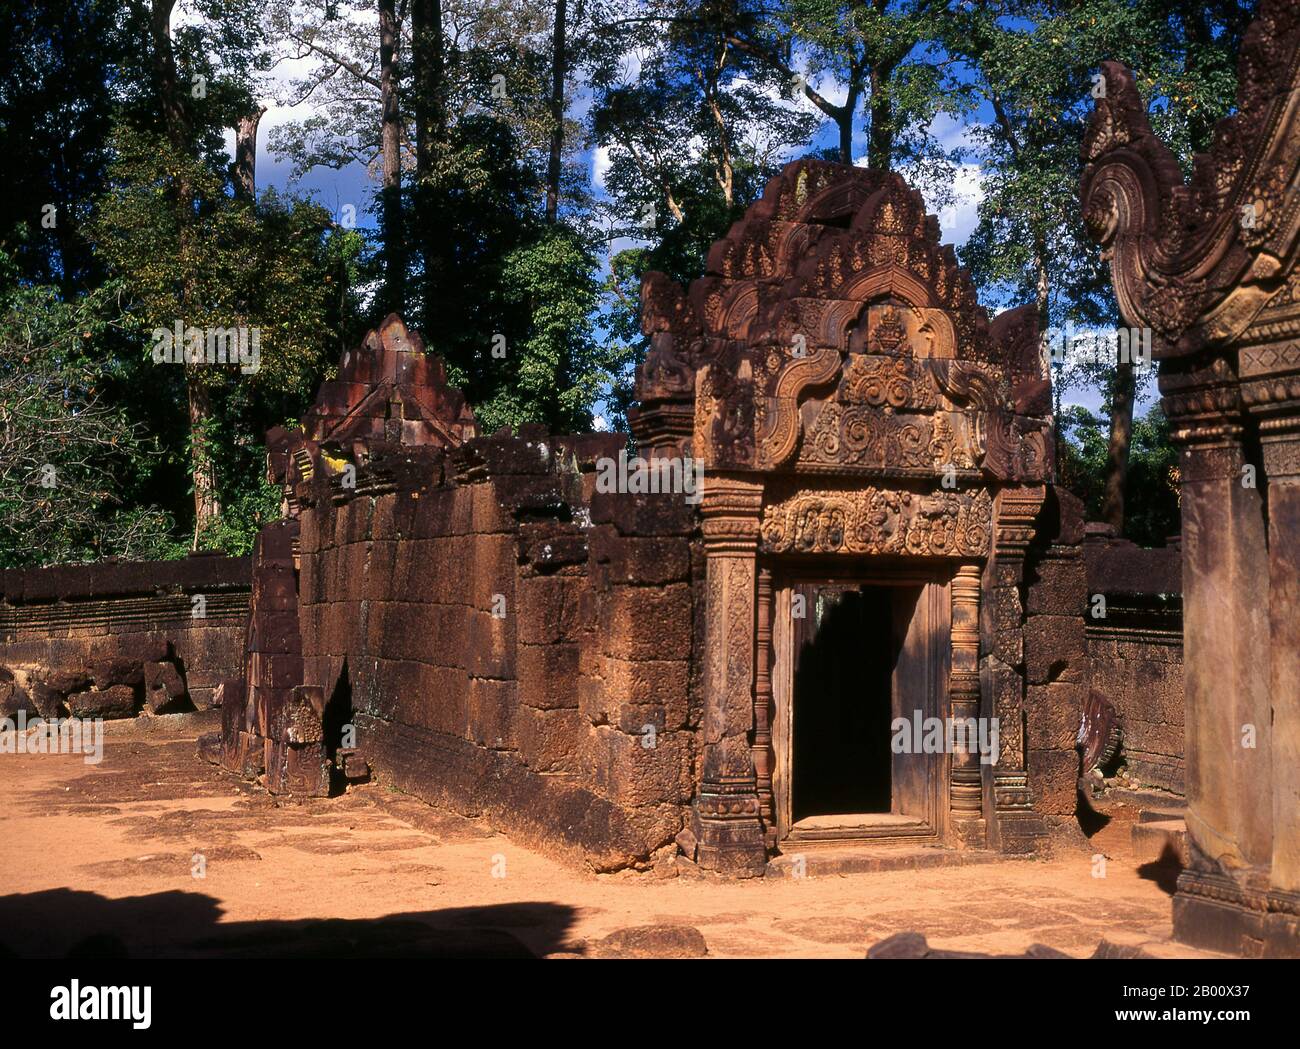 Kambodscha: Galeriegebäude, Banteay Srei (Zitadelle der Frauen), in der Nähe von Angkor. Banteay Srei (oder Banteay Srey) ist ein kambodschanischer Tempel aus dem 10. Jahrhundert, der dem Hindu-gott Shiva gewidmet ist und im Nordosten der Hauptgruppe von Tempeln in Angkor liegt. Banteay Srei ist weitgehend aus rotem Sandstein gebaut, ein Medium, das sich für die aufwendigen dekorativen Wandschnitzereien eignet, die noch heute zu beobachten sind. Banteay Srei wird manchmal als das "Juwel der Khmer-Kunst" bezeichnet. Stockfoto